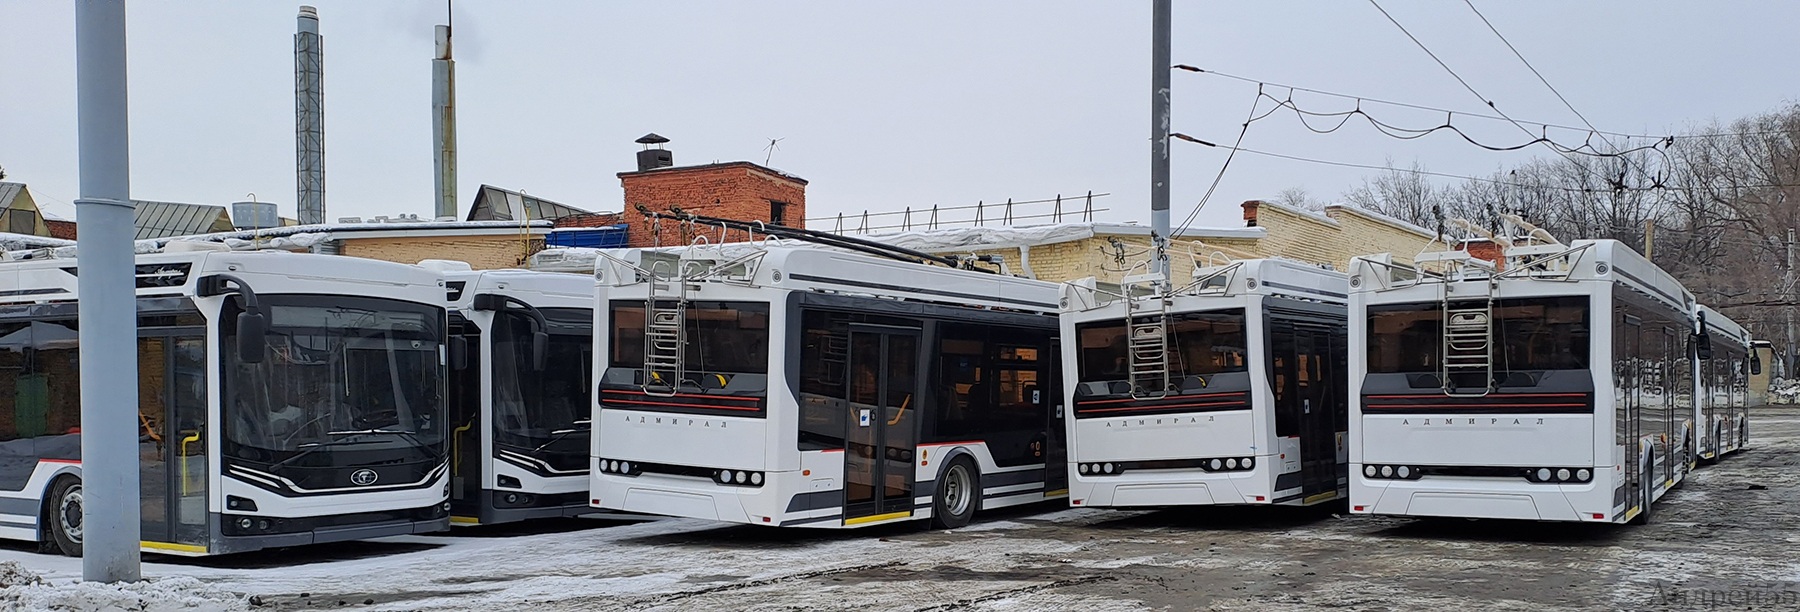 Омск — Троллейбусы без номеров